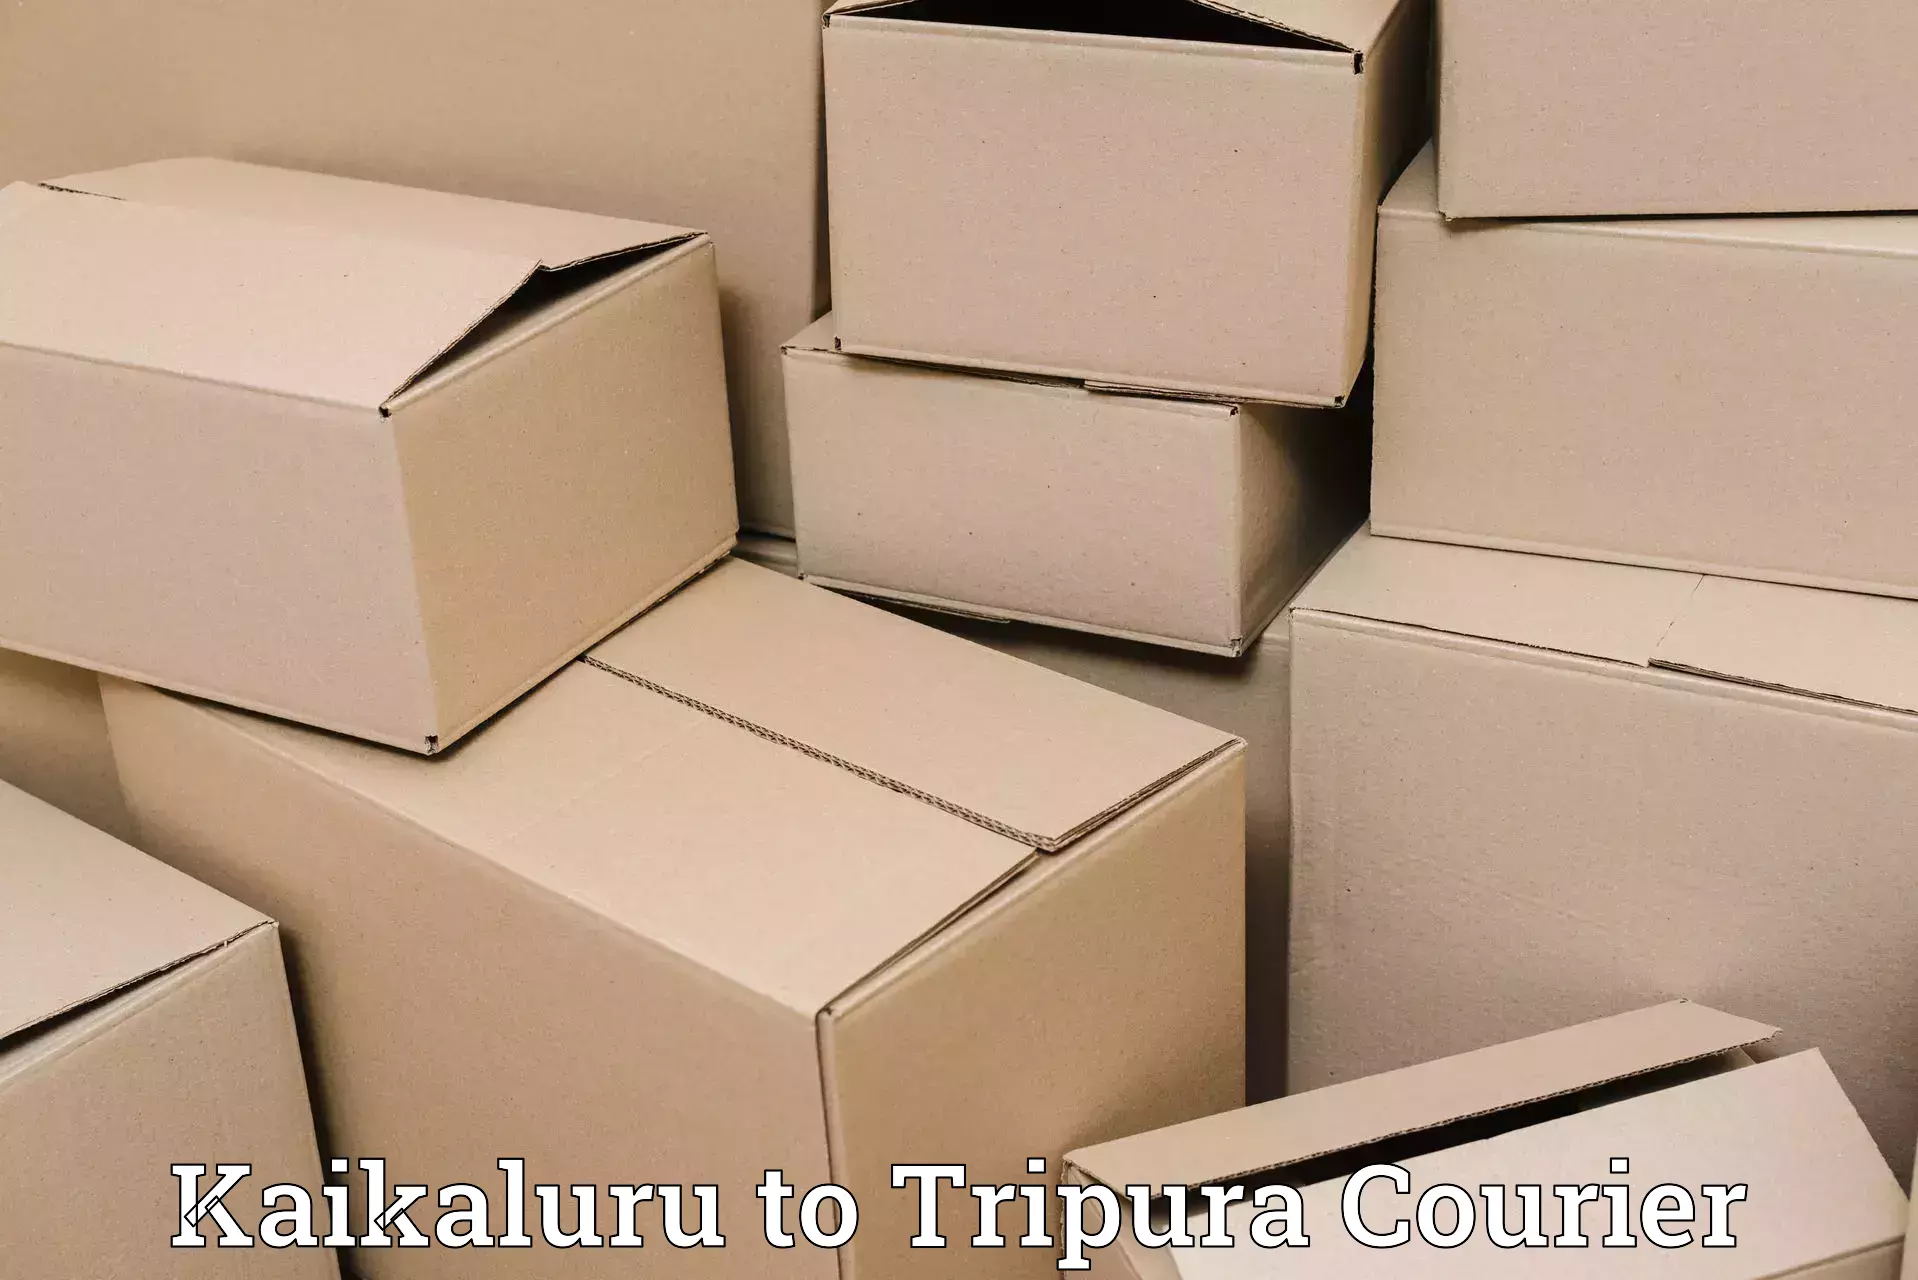 Corporate courier solutions Kaikaluru to Sonamura